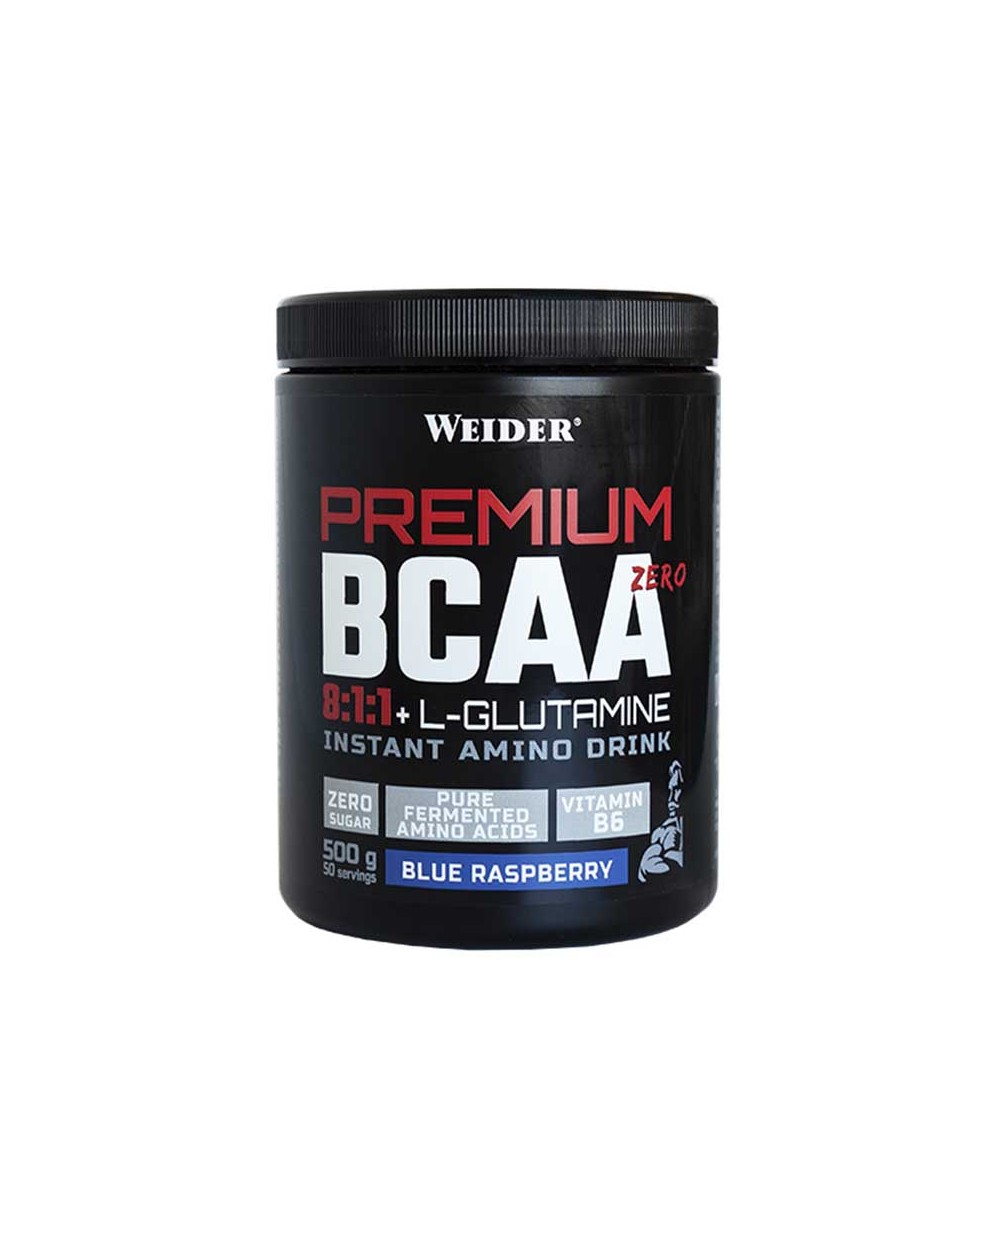 Aminiacidos Premium BCAA 8:1:1 + Glutamine Weider 500gr.